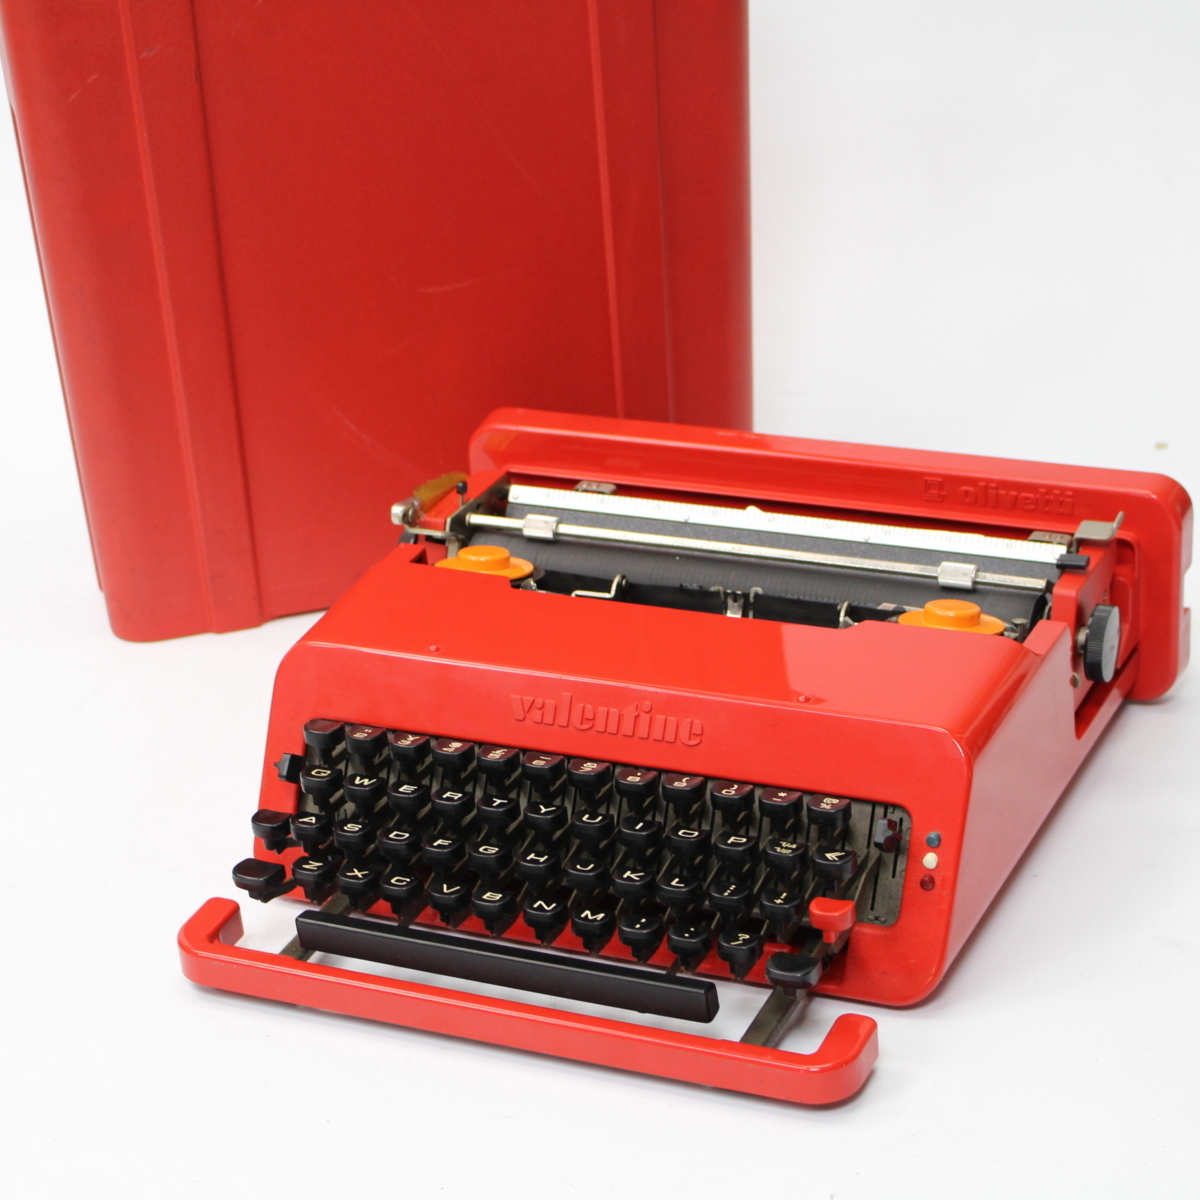 オリベッティの真っ赤なタイプライター「バレンタイン」 | www